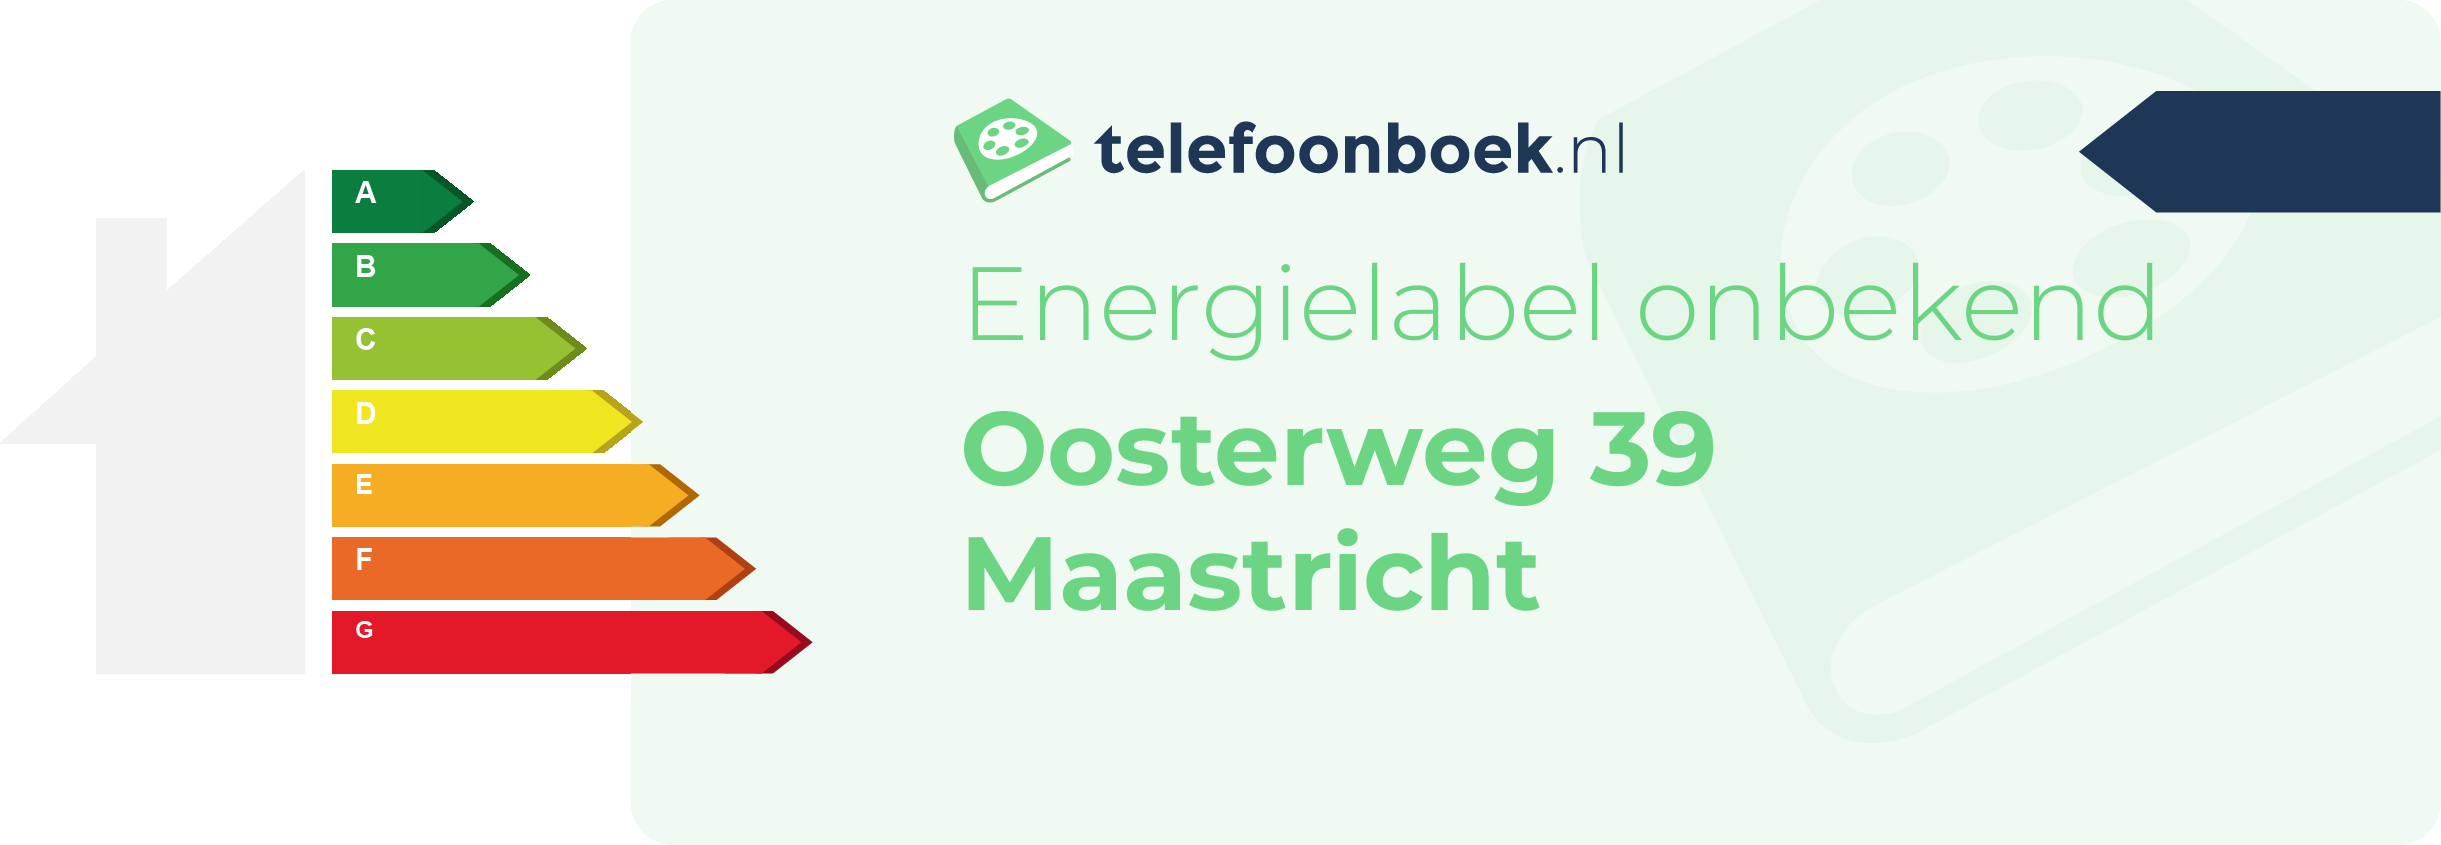 Energielabel Oosterweg 39 Maastricht